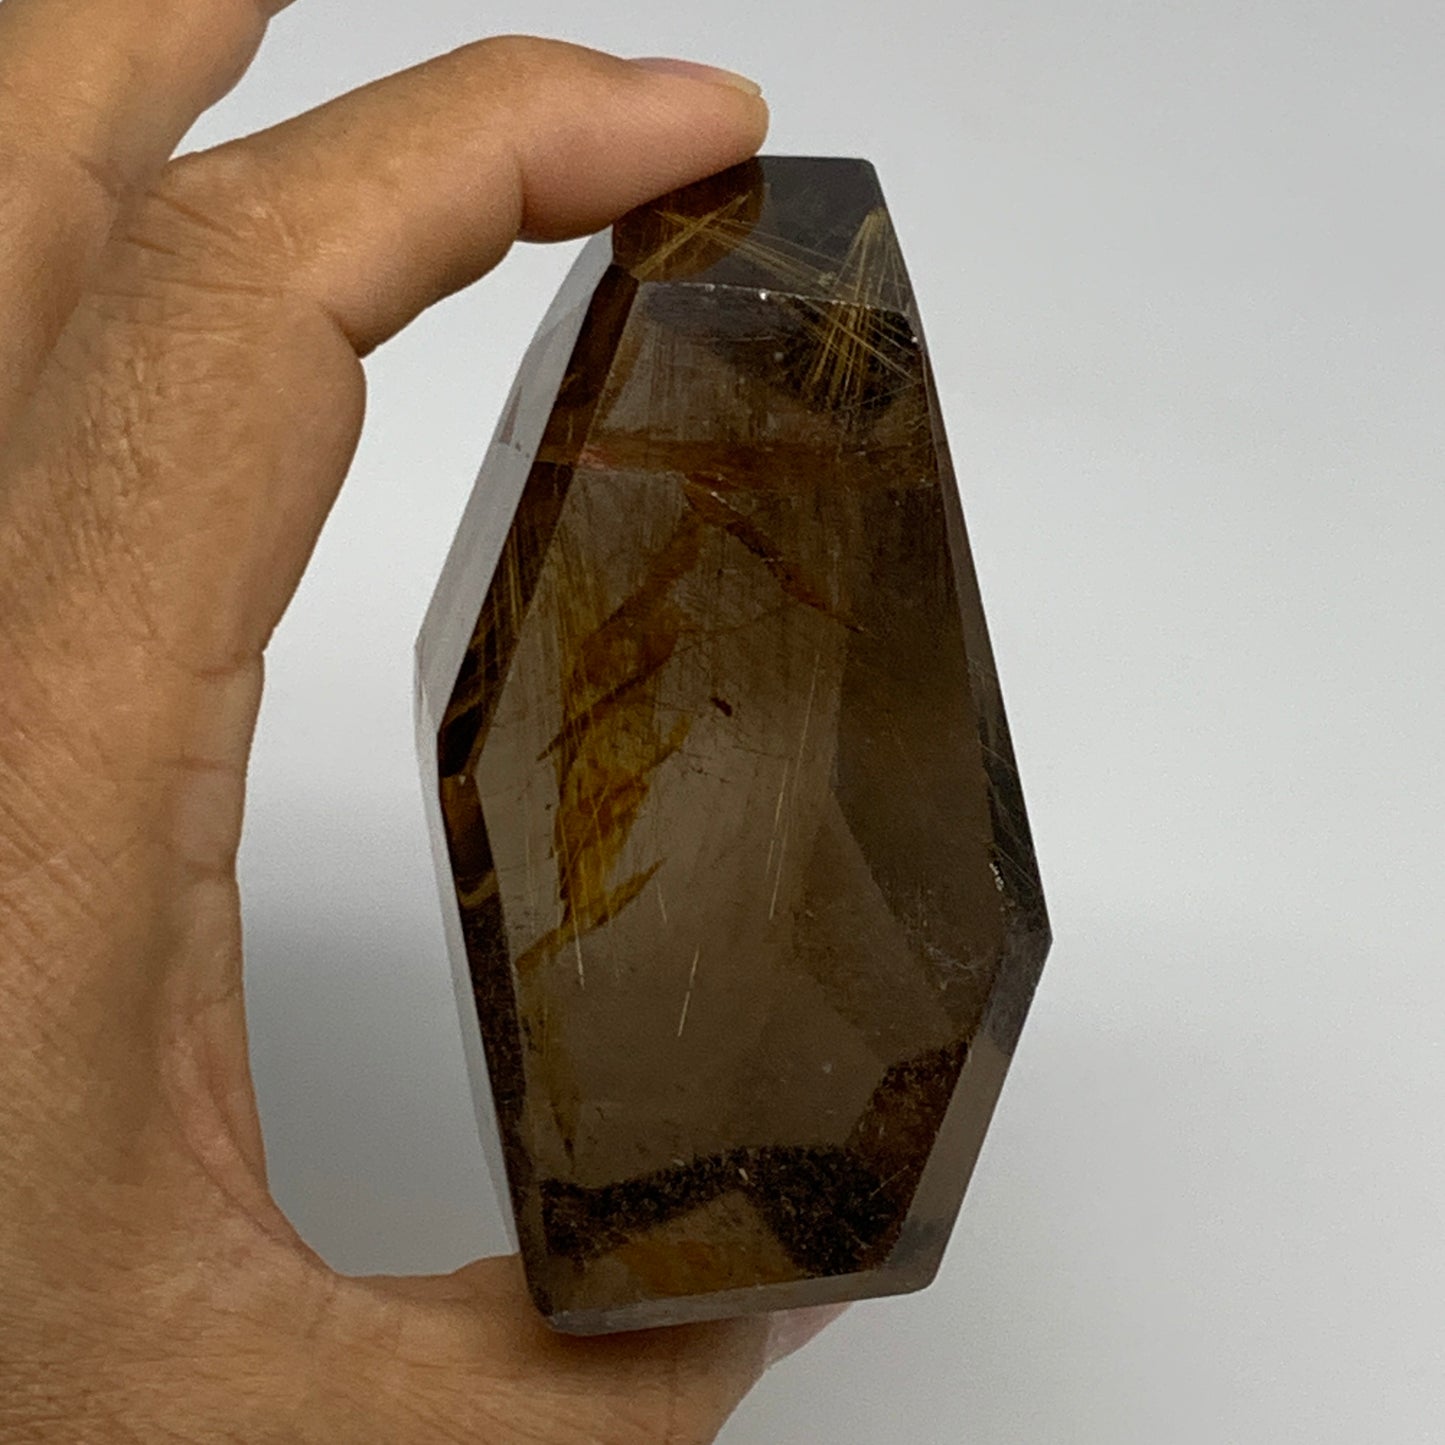 288.5g, 3"x2.3"x1.6", Natural Golden Rutile Quartz Crystal Chunk from Brazil,B27